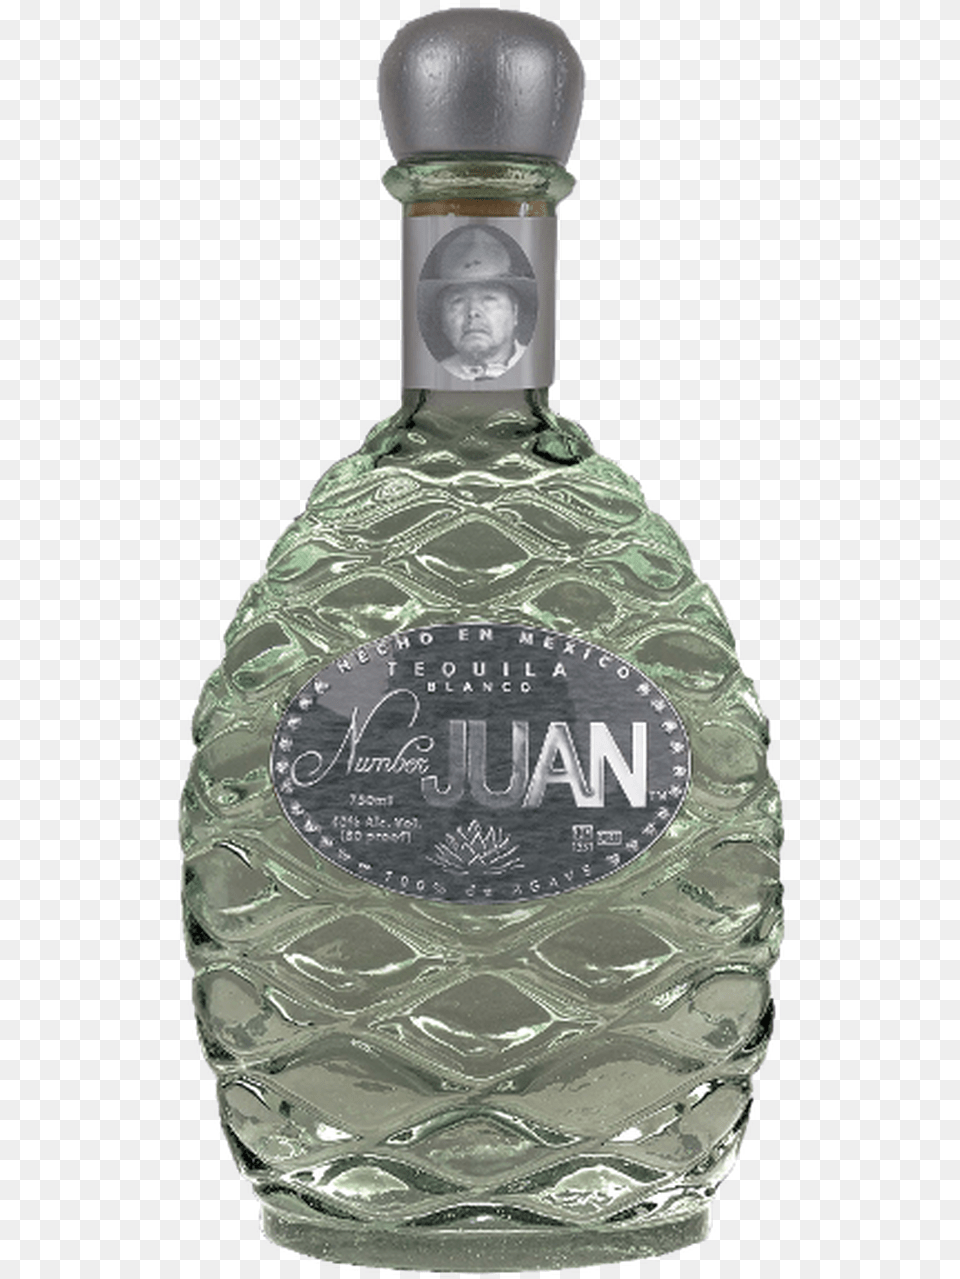 Number Juan Blanco Tequila Number Juan Tequila, Alcohol, Beverage, Liquor, Bottle Free Transparent Png